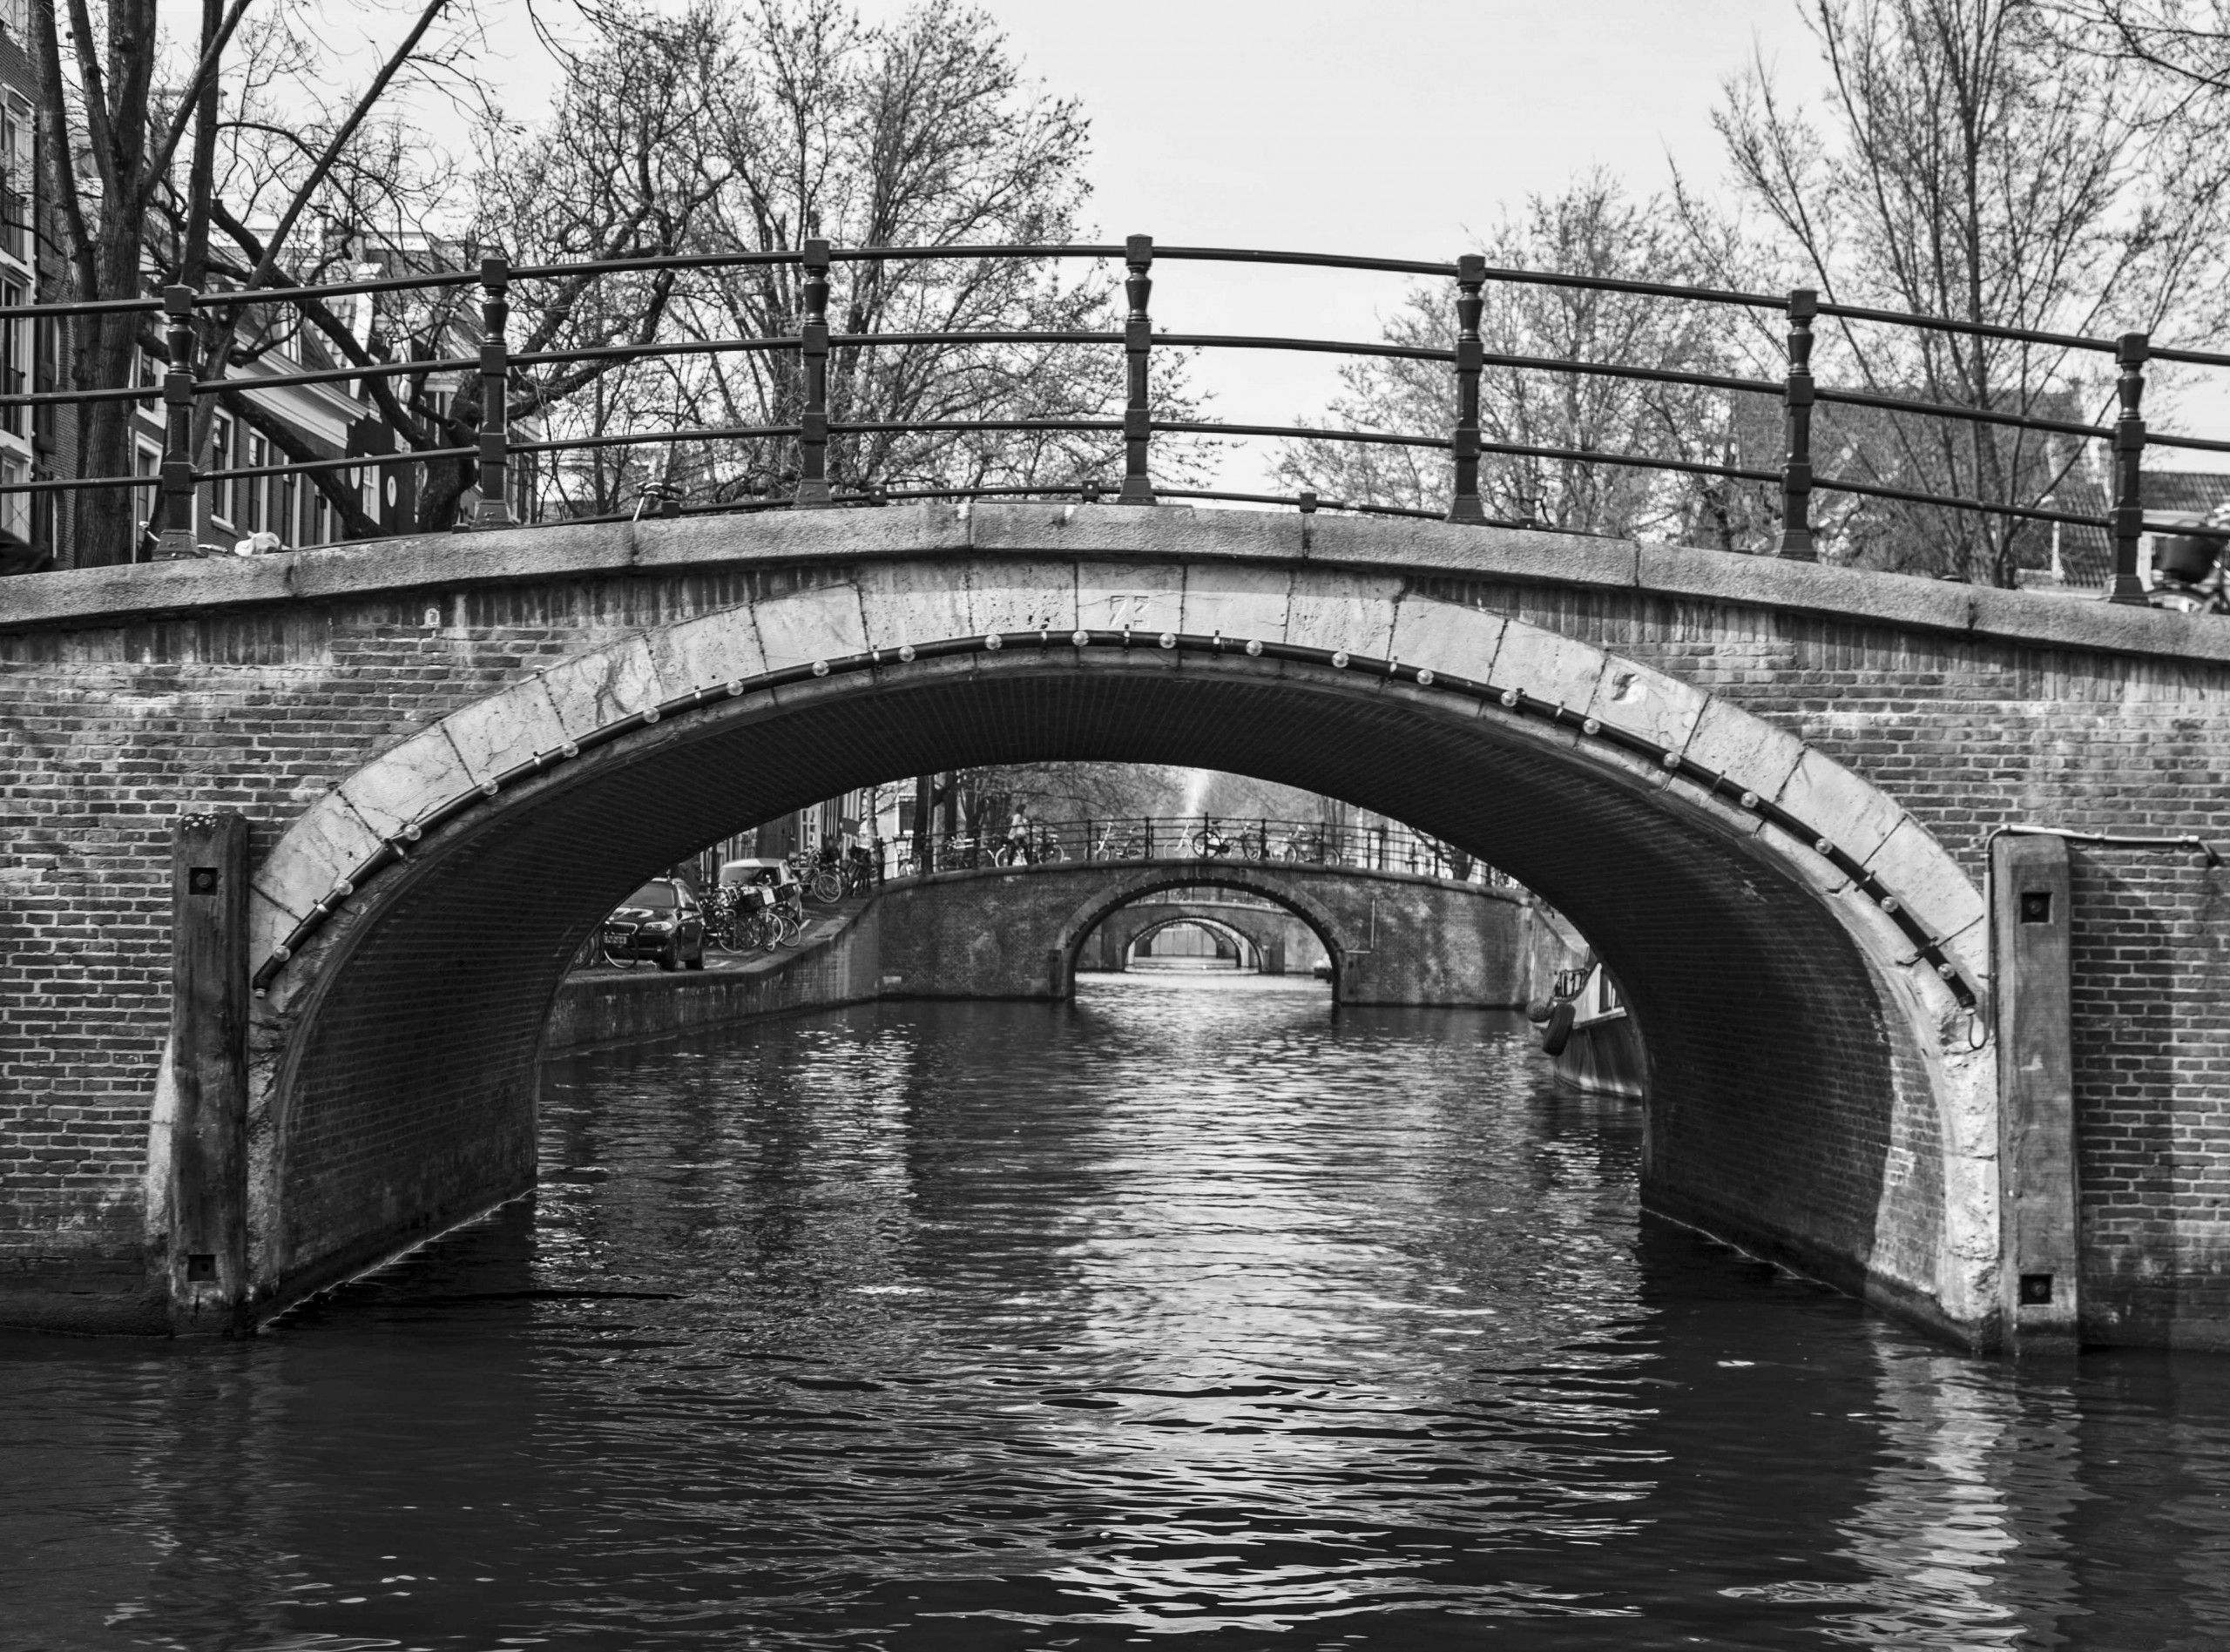 Five Bridges in Amsterdam by Matthew Walker